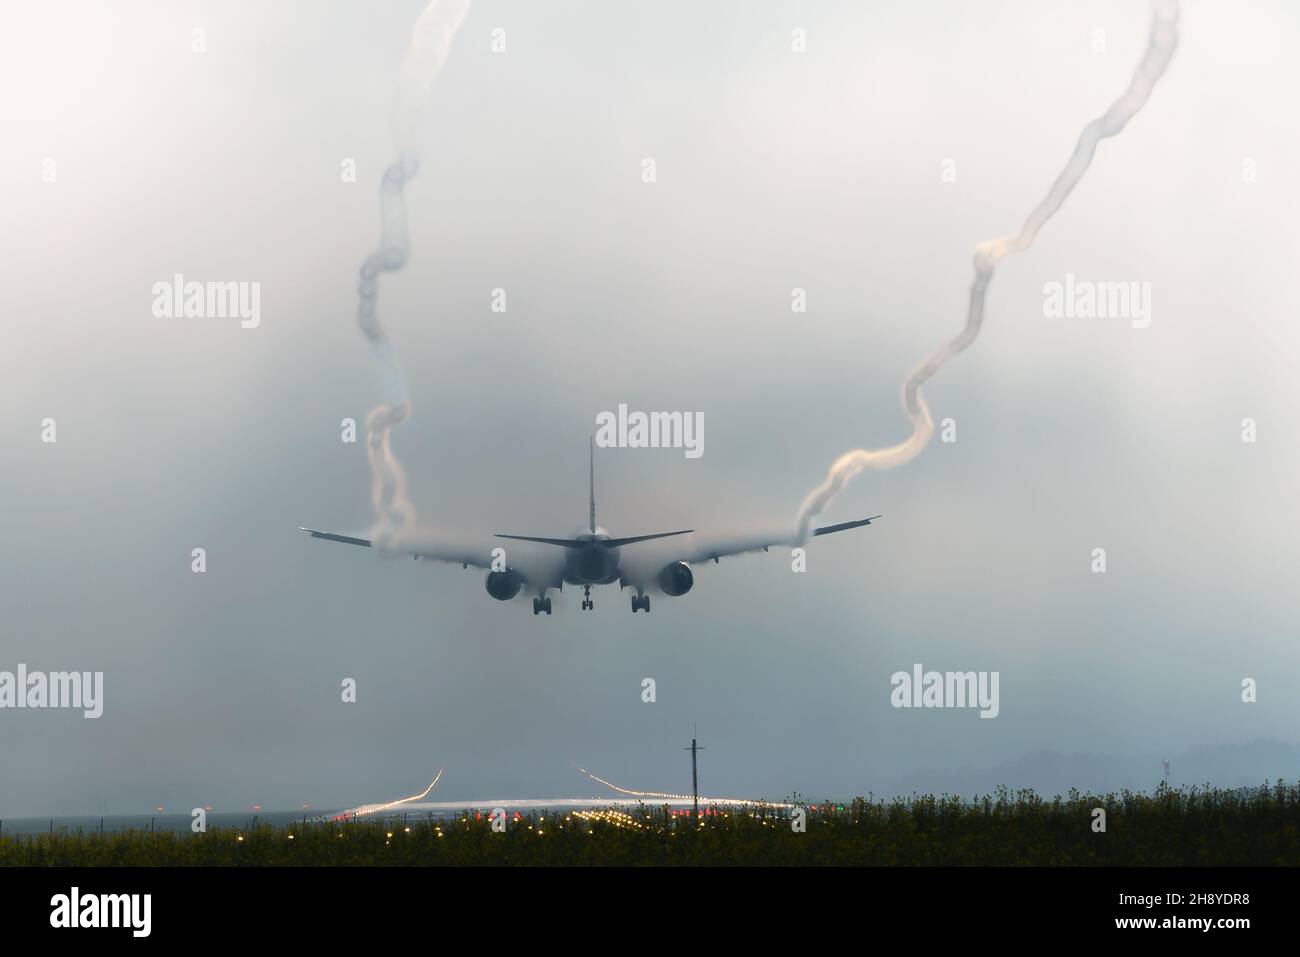 Die Flugzeuge landen mit schlechter Sicht auf der Start- und Landebahn des Flughafens Zürich und hinterlassen Flügelwirbel. Luftwirbel aufgrund von feuchtem Wetter und Kondensstreifen. Stockfoto